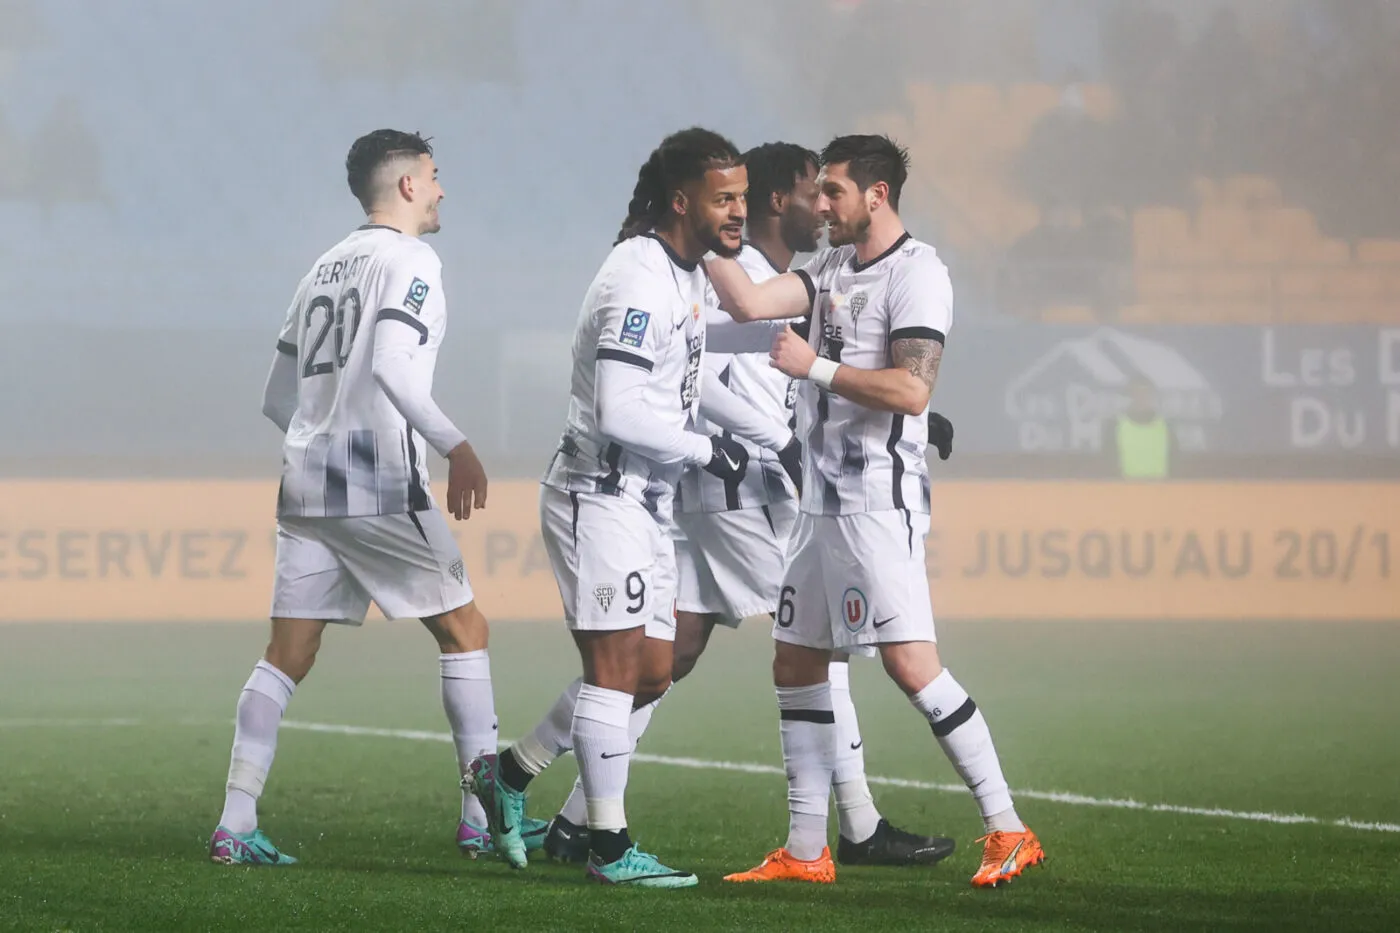 Les Girondins de Bordeaux s'offrent Angers - Ligue 2 - J22